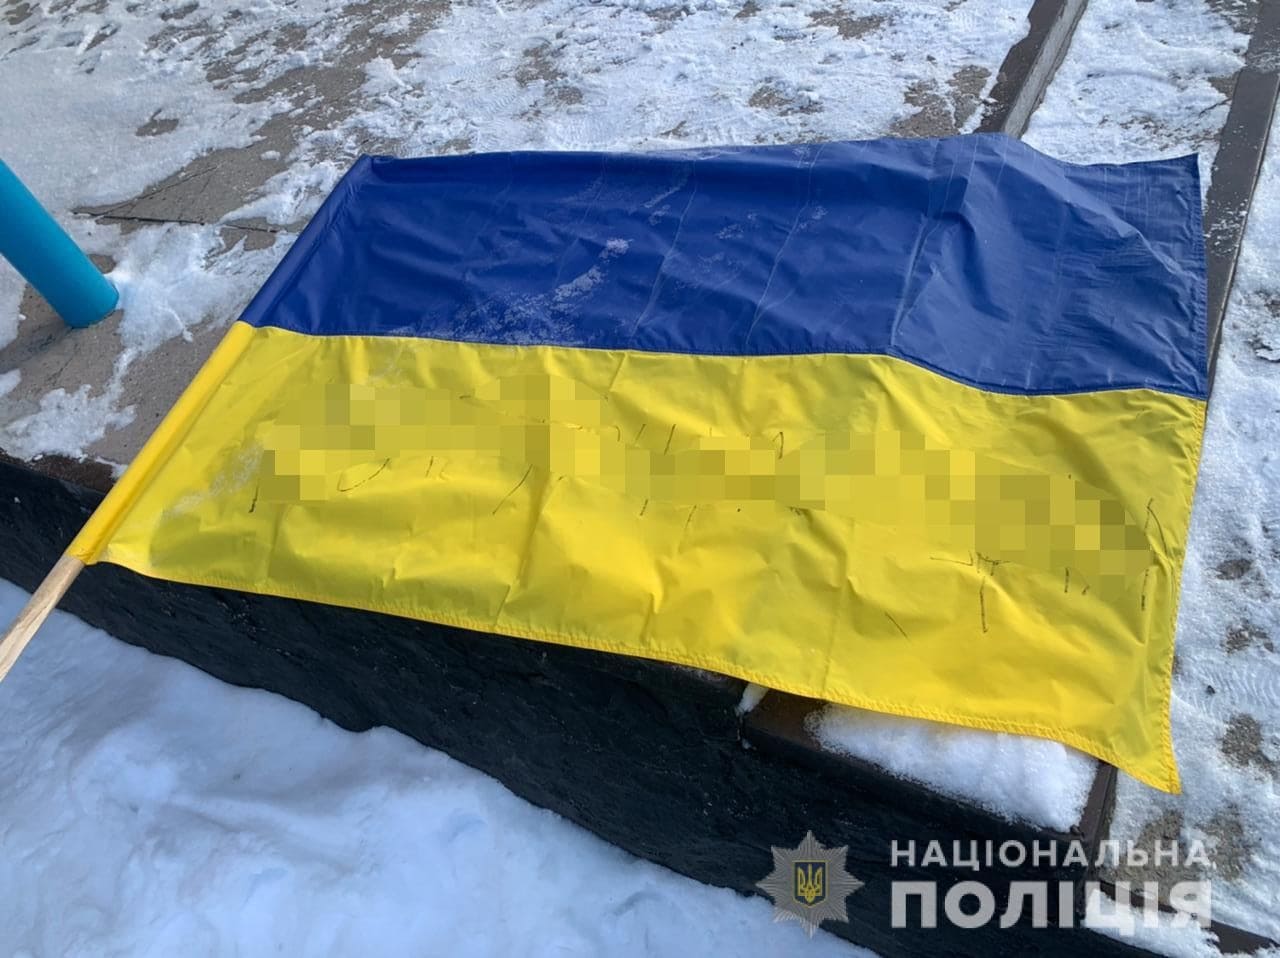 На Вінниччині п'яна дівчина розписала прапор України лайкою, їй загрожує ув'язнення